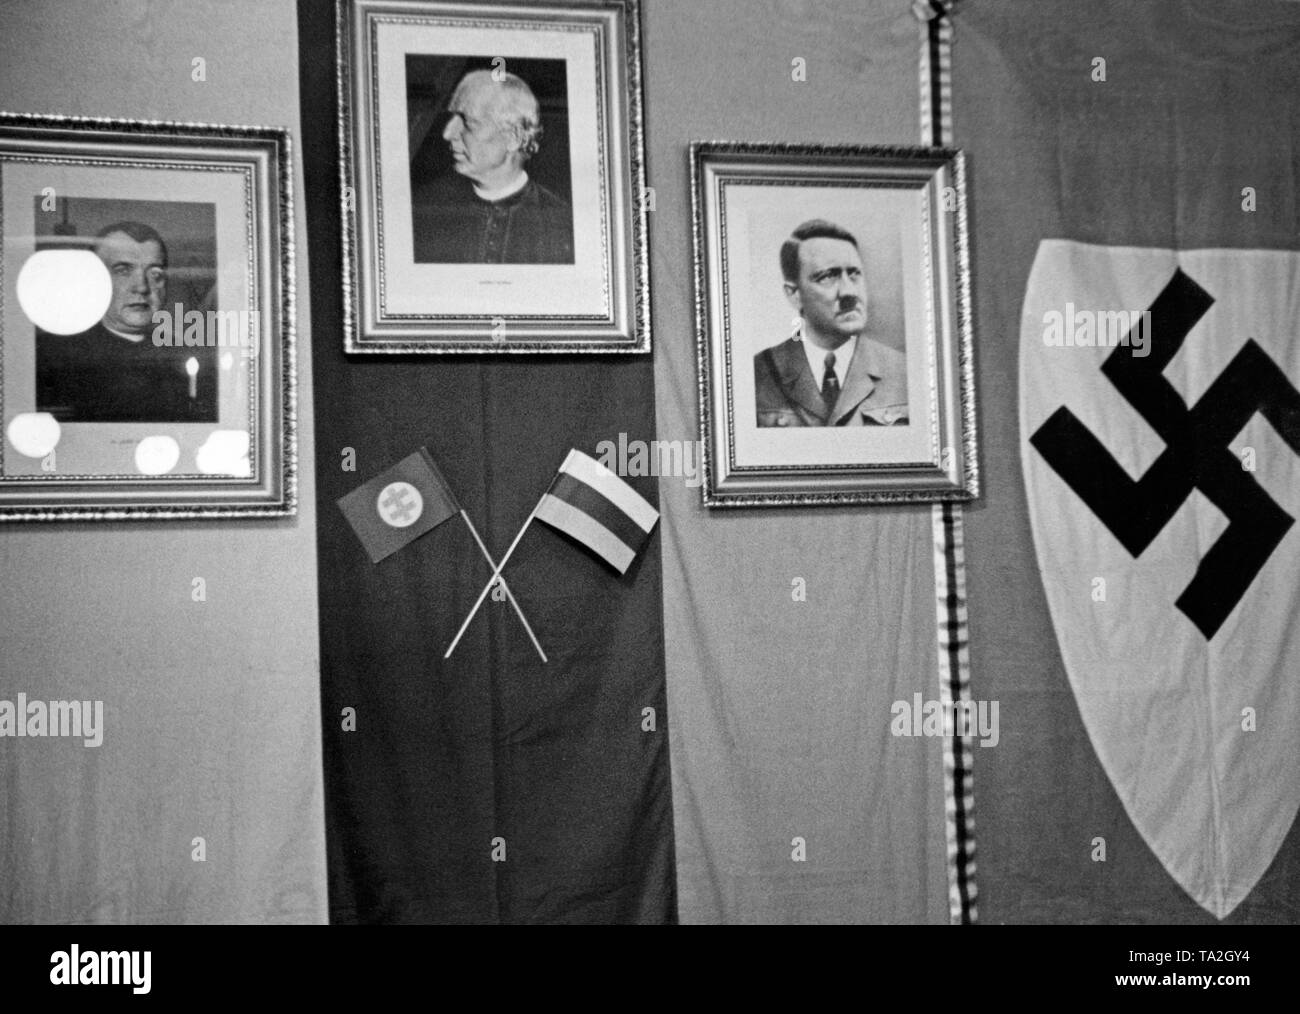 Pays chef de la garde de Hlinka à Bratislava. Portraits de Jozef Tiso, Andrej Hlinka et Adolf Hitler accrocher sur le mur. La Hlinka gcc est une organisation de défense paramilitaires en Slovaquie de 1938 à 1945. Photo non datée, autour de 1939. Banque D'Images